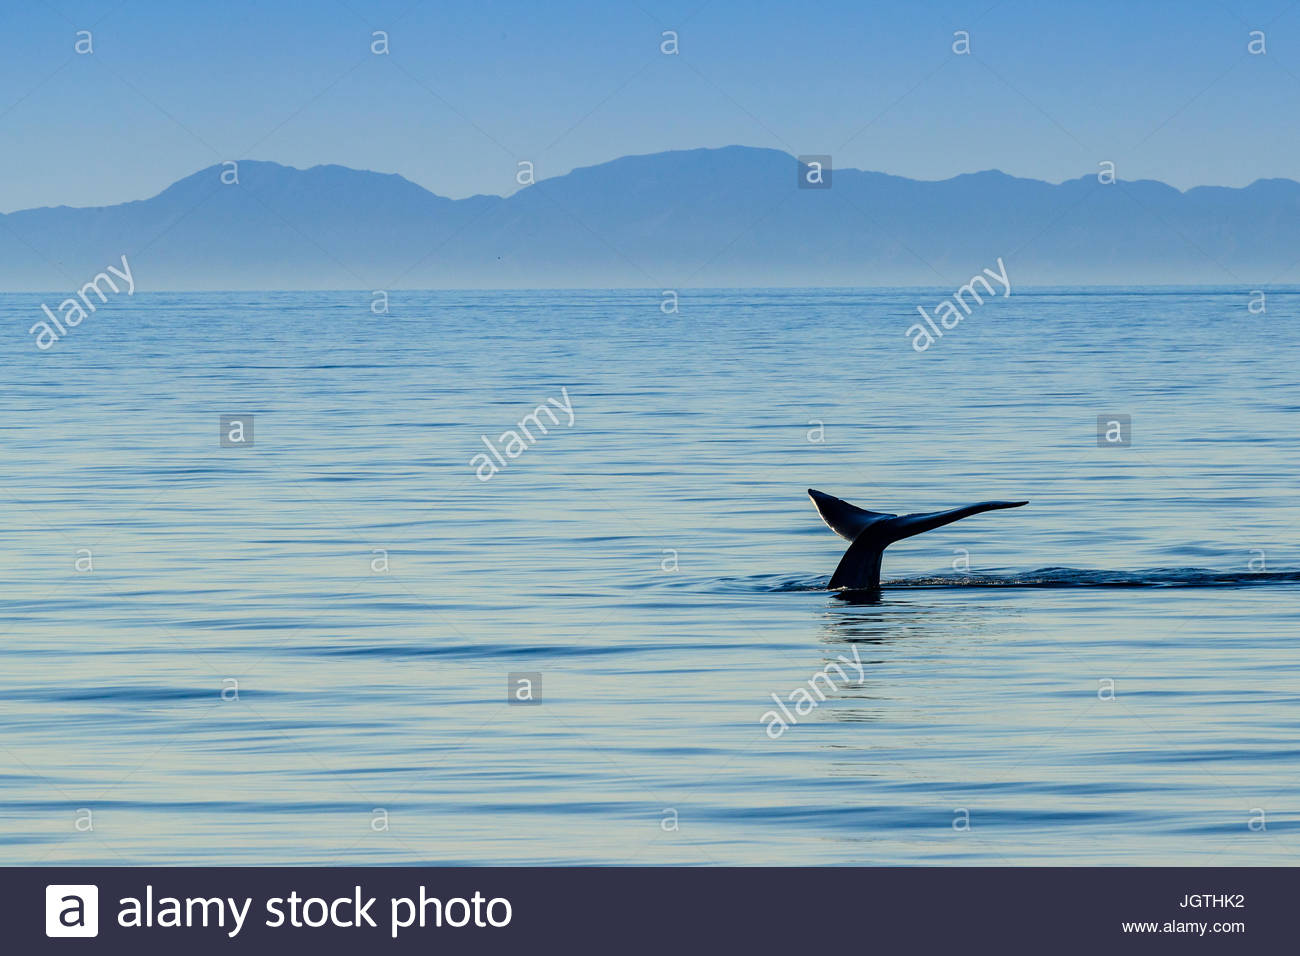 El animal más grande del mundo, una ballena azul plantea su fluke fuera del agua. Foto de stock